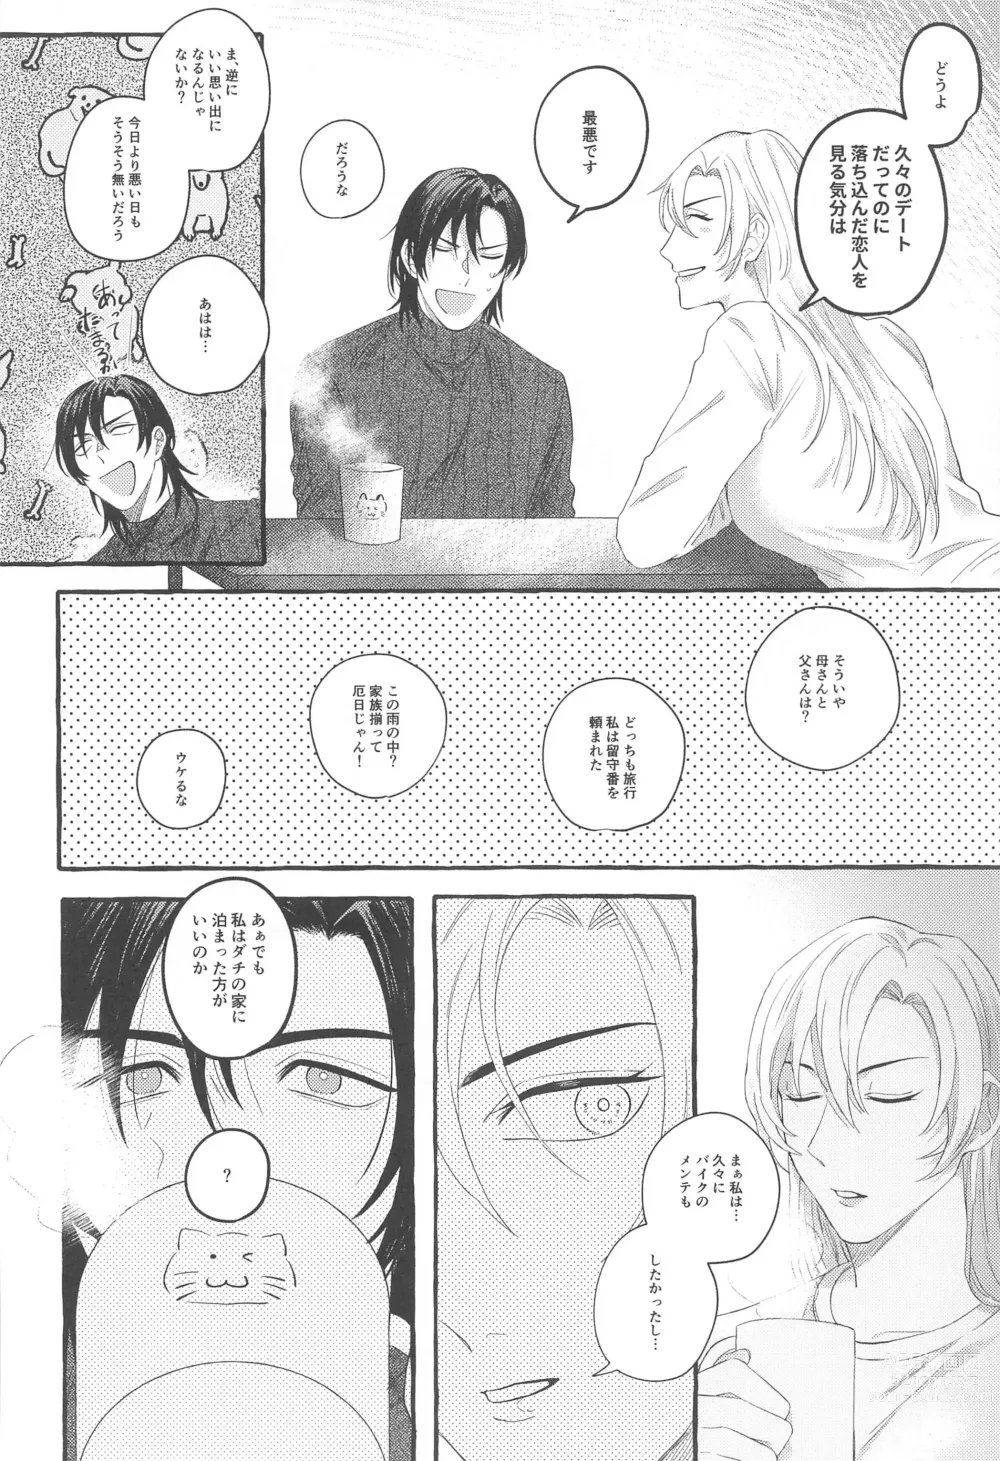 Page 9 of doujinshi Ore wa Koitsu ni Yowai